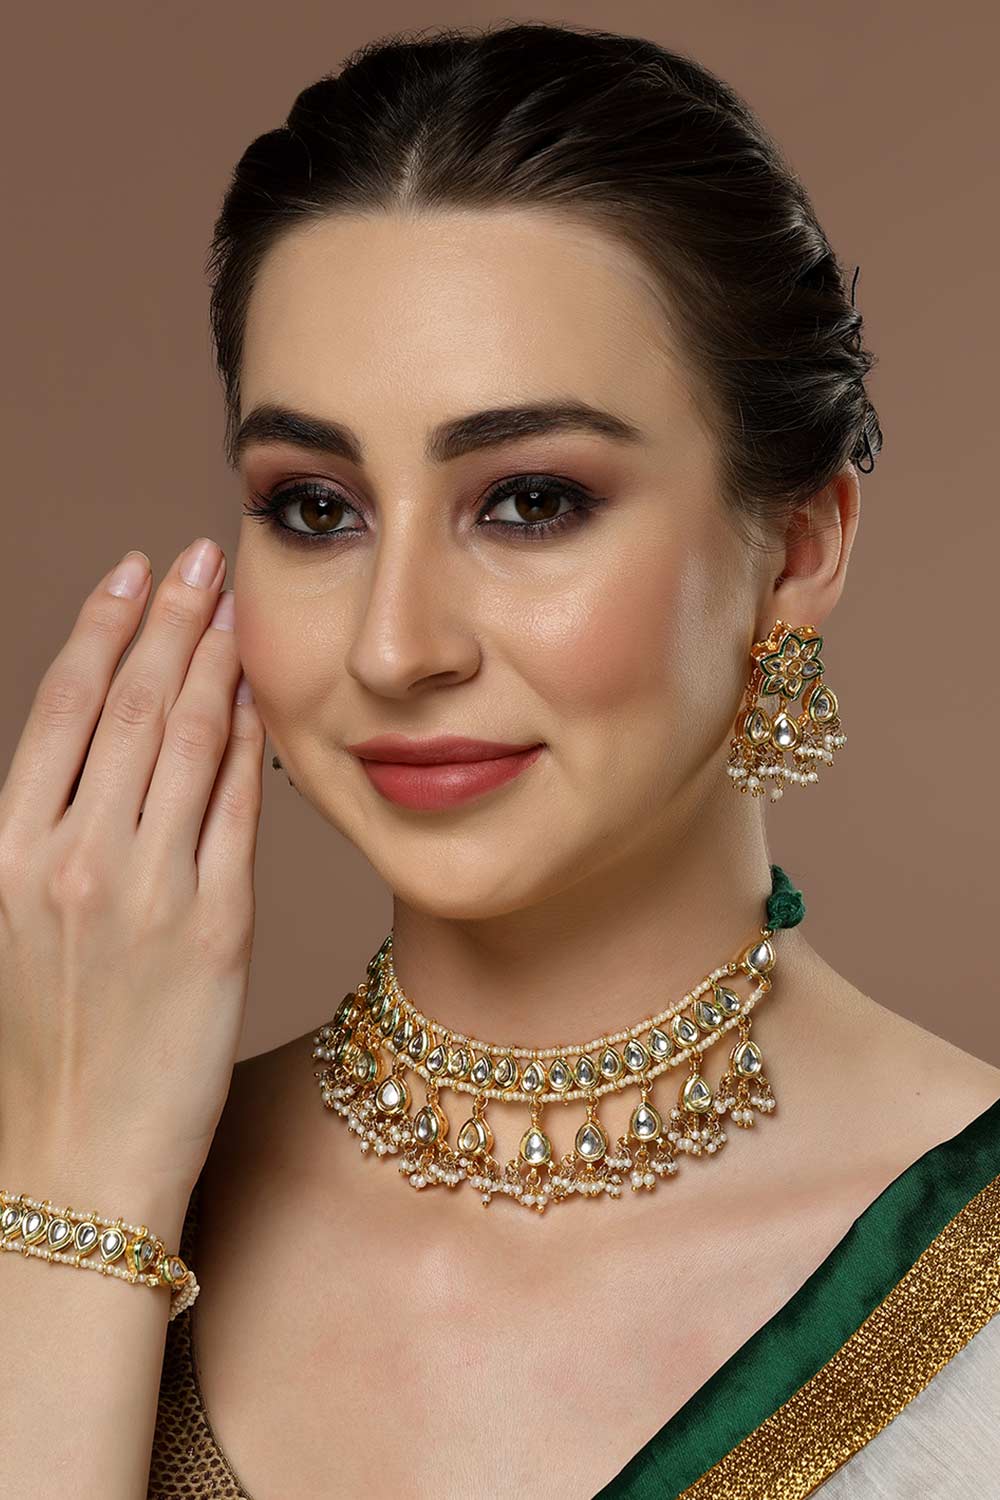 Fathma Green & Gold Flower Kundan with Pearls Drop Earrings